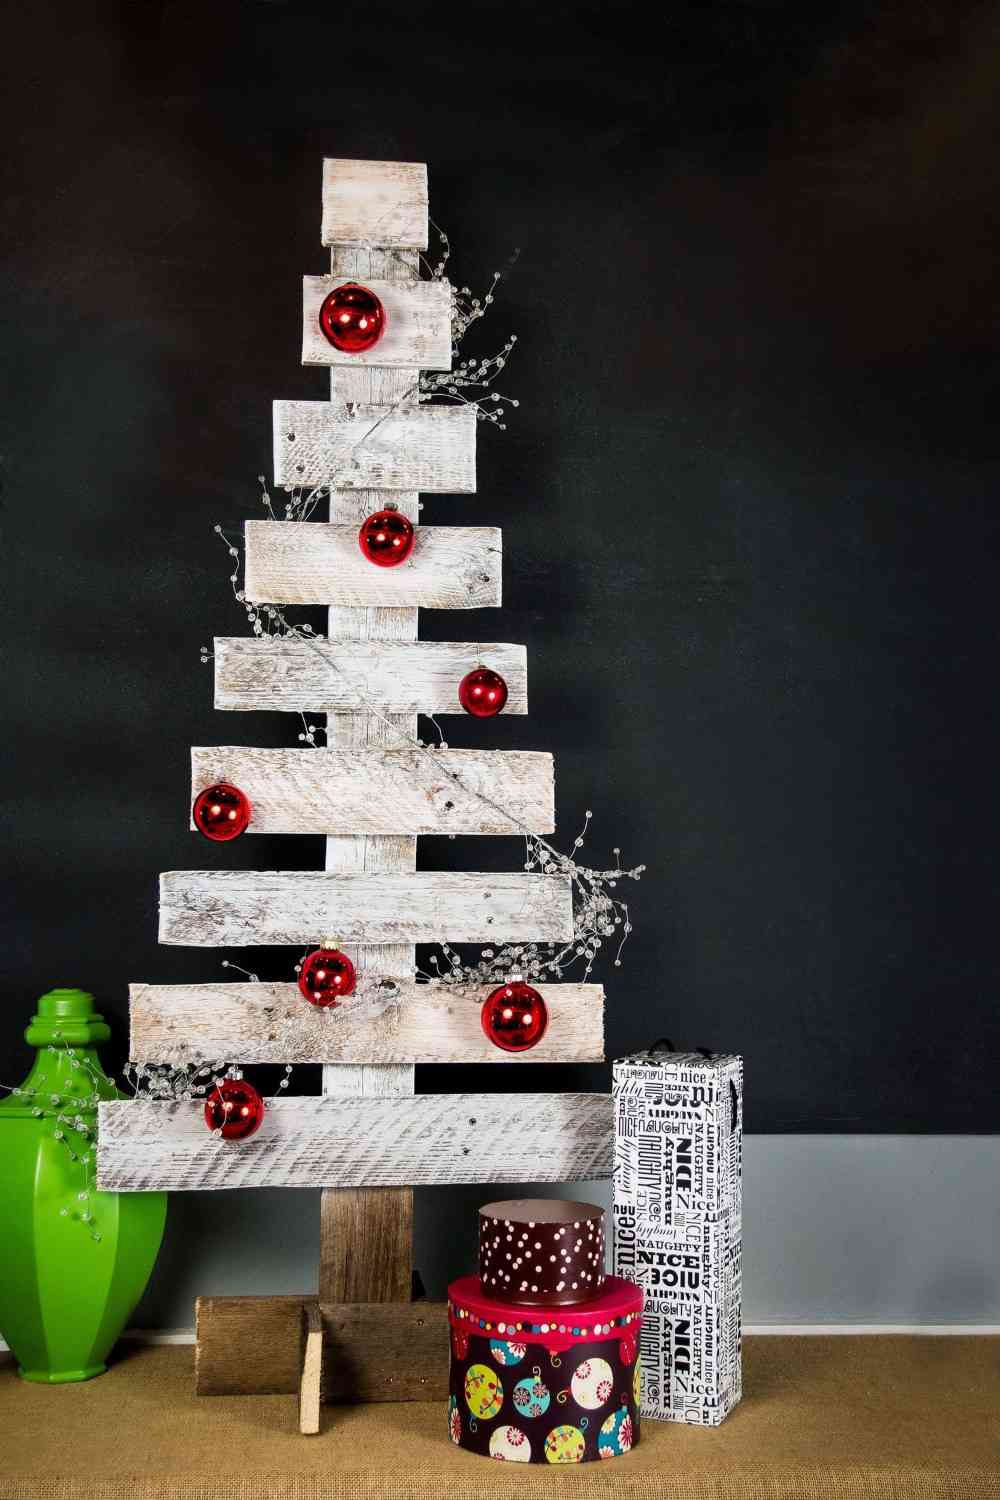 شجرة عيد الميلاد البليت الأبيض مزينة بكرات عيد الميلاد الحمراء وهدايا عيد الميلاد